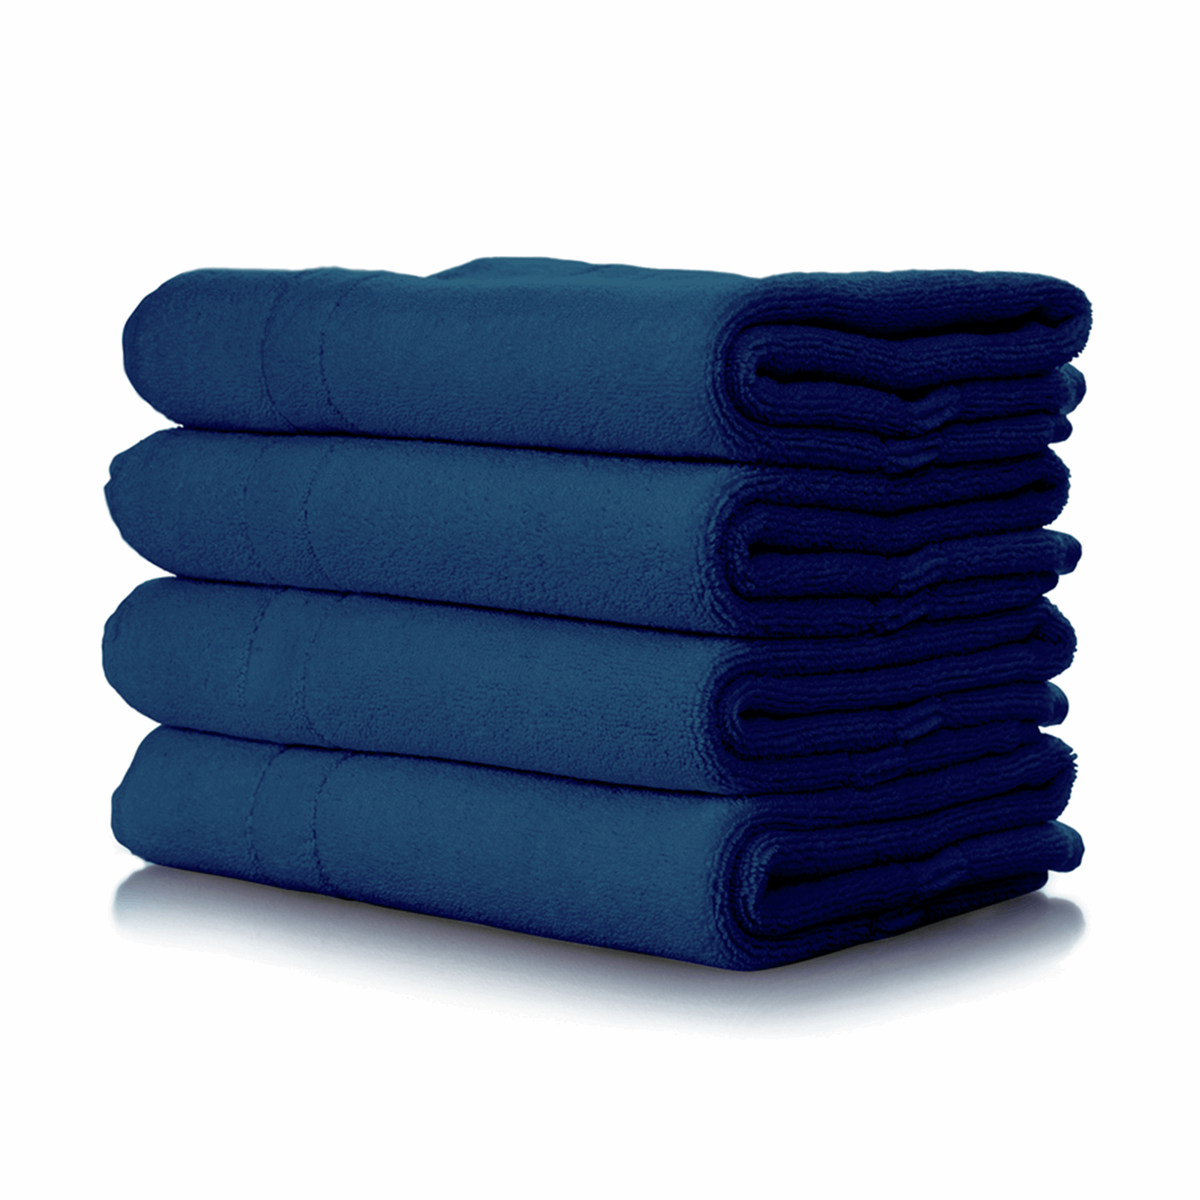 Dylon Fabric Machine Dye - Jeans Blue 41